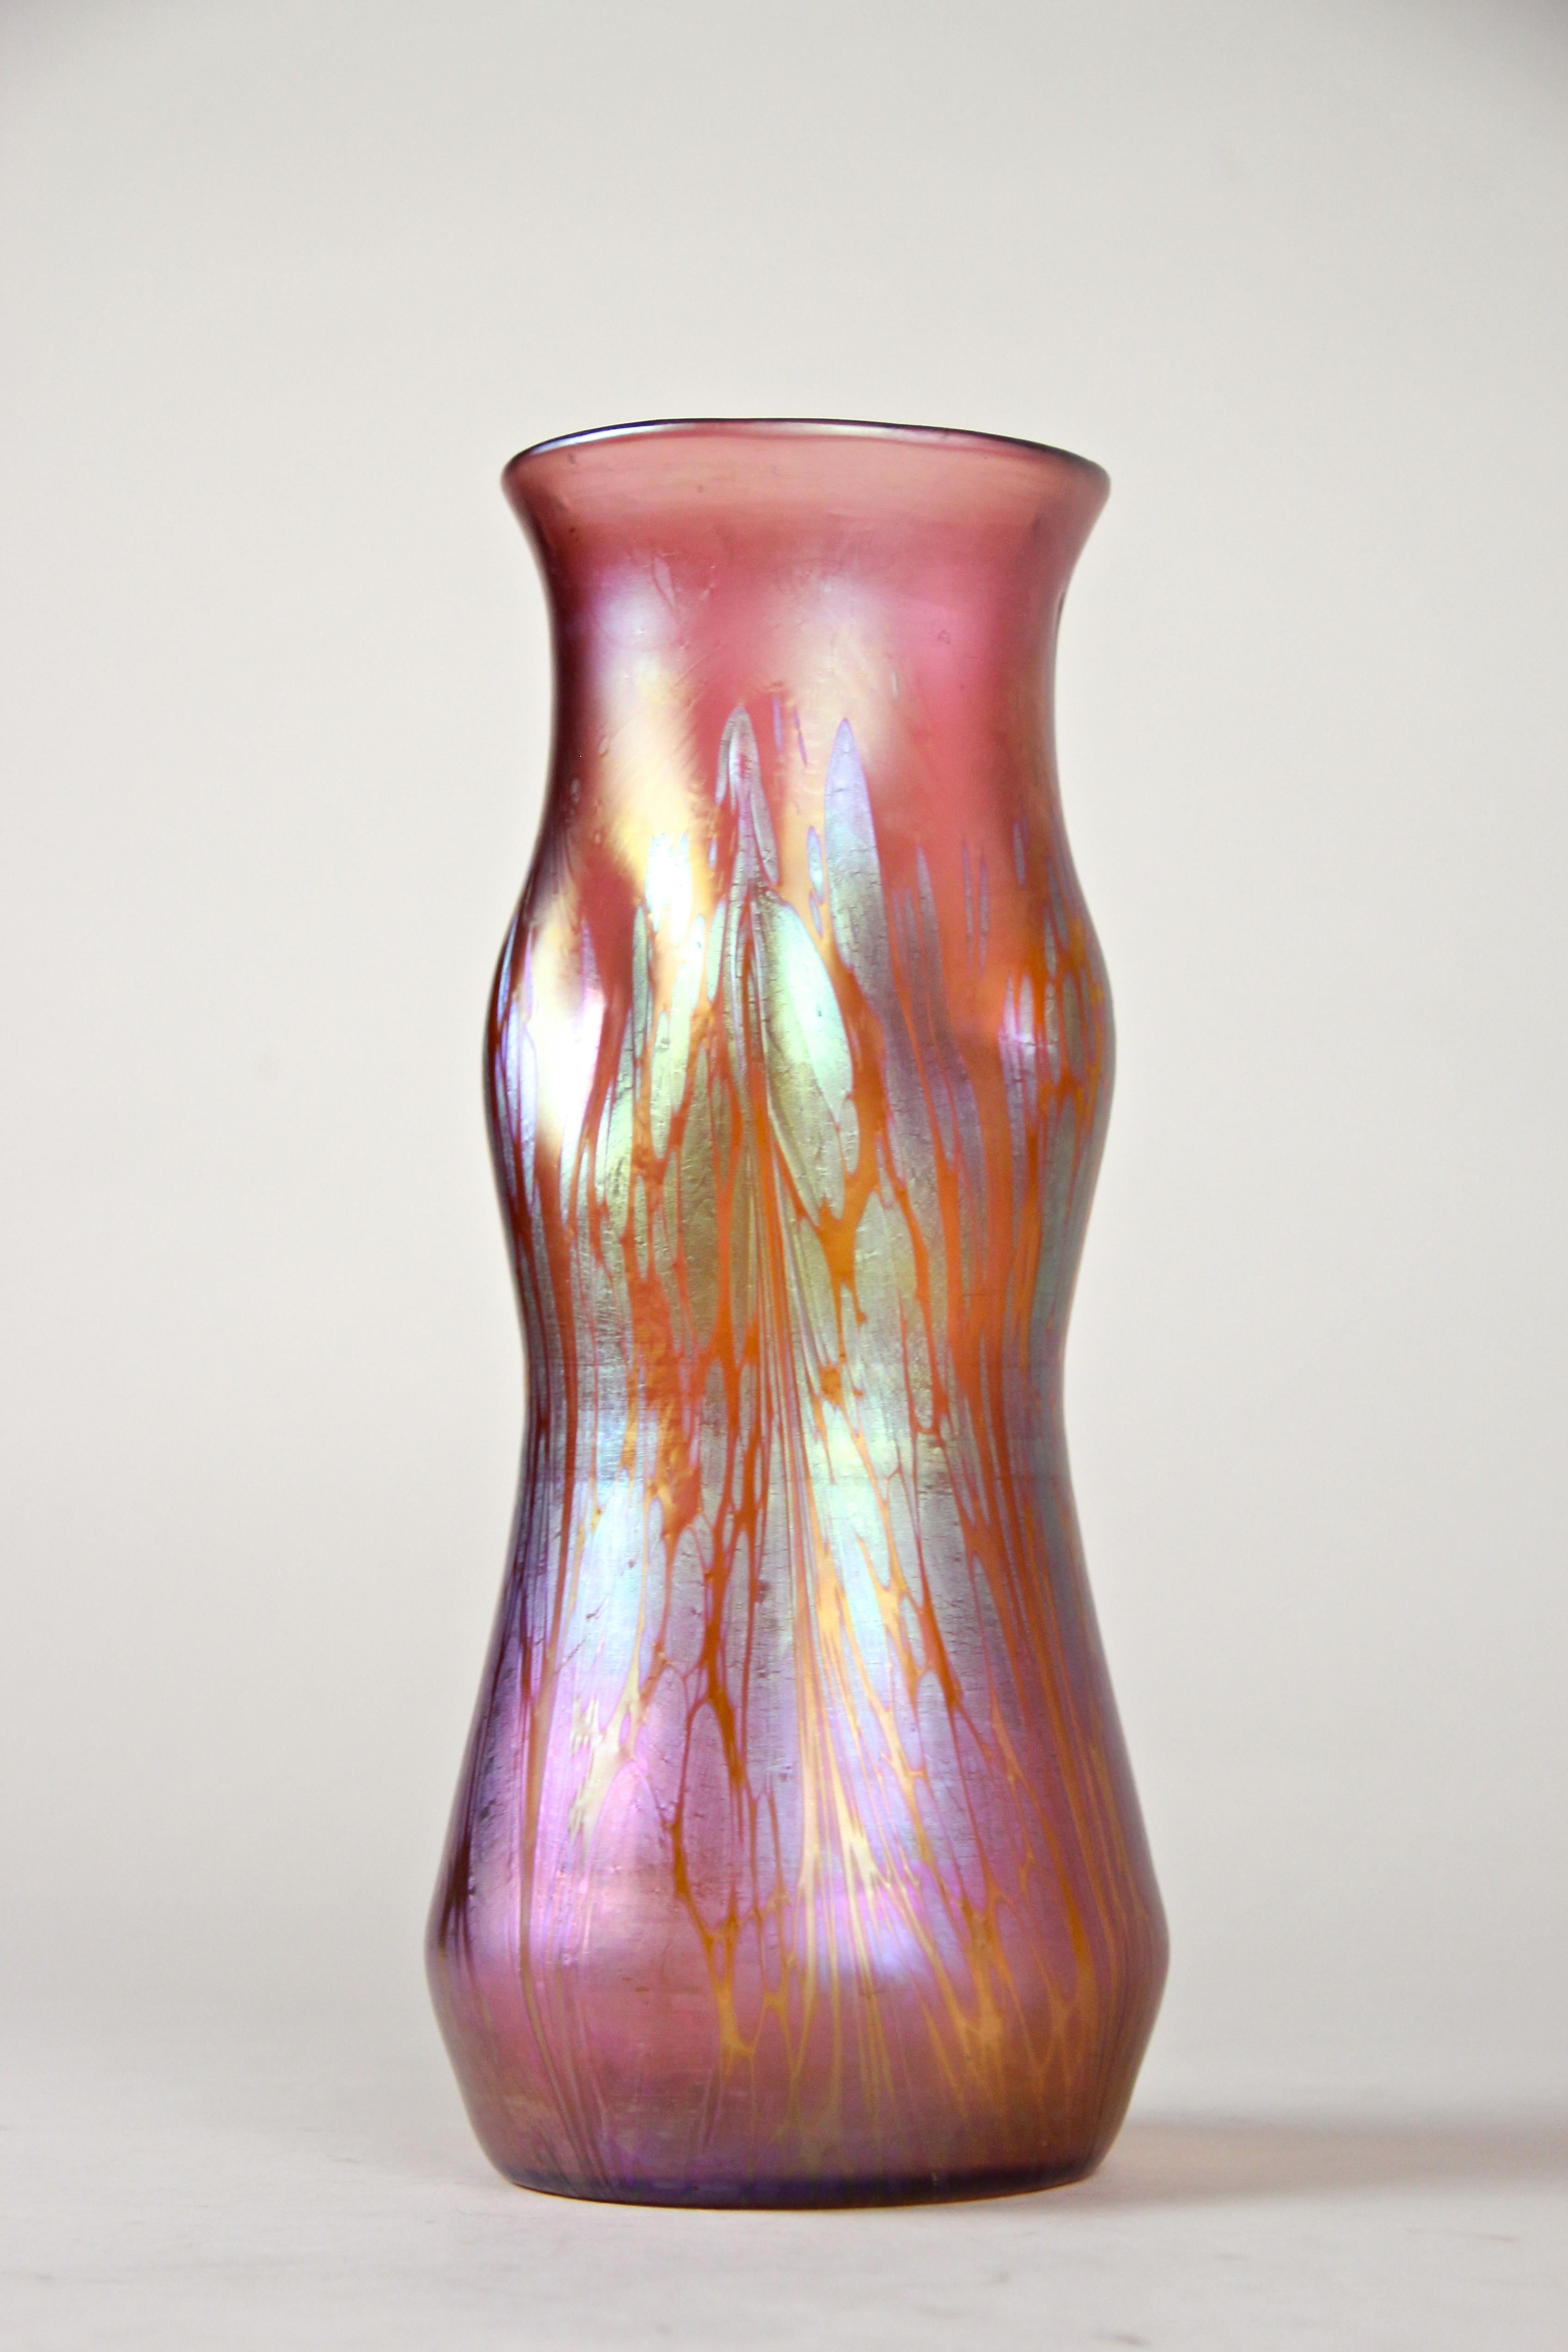 Outstanding Loetz Witwe glass vase in decor 